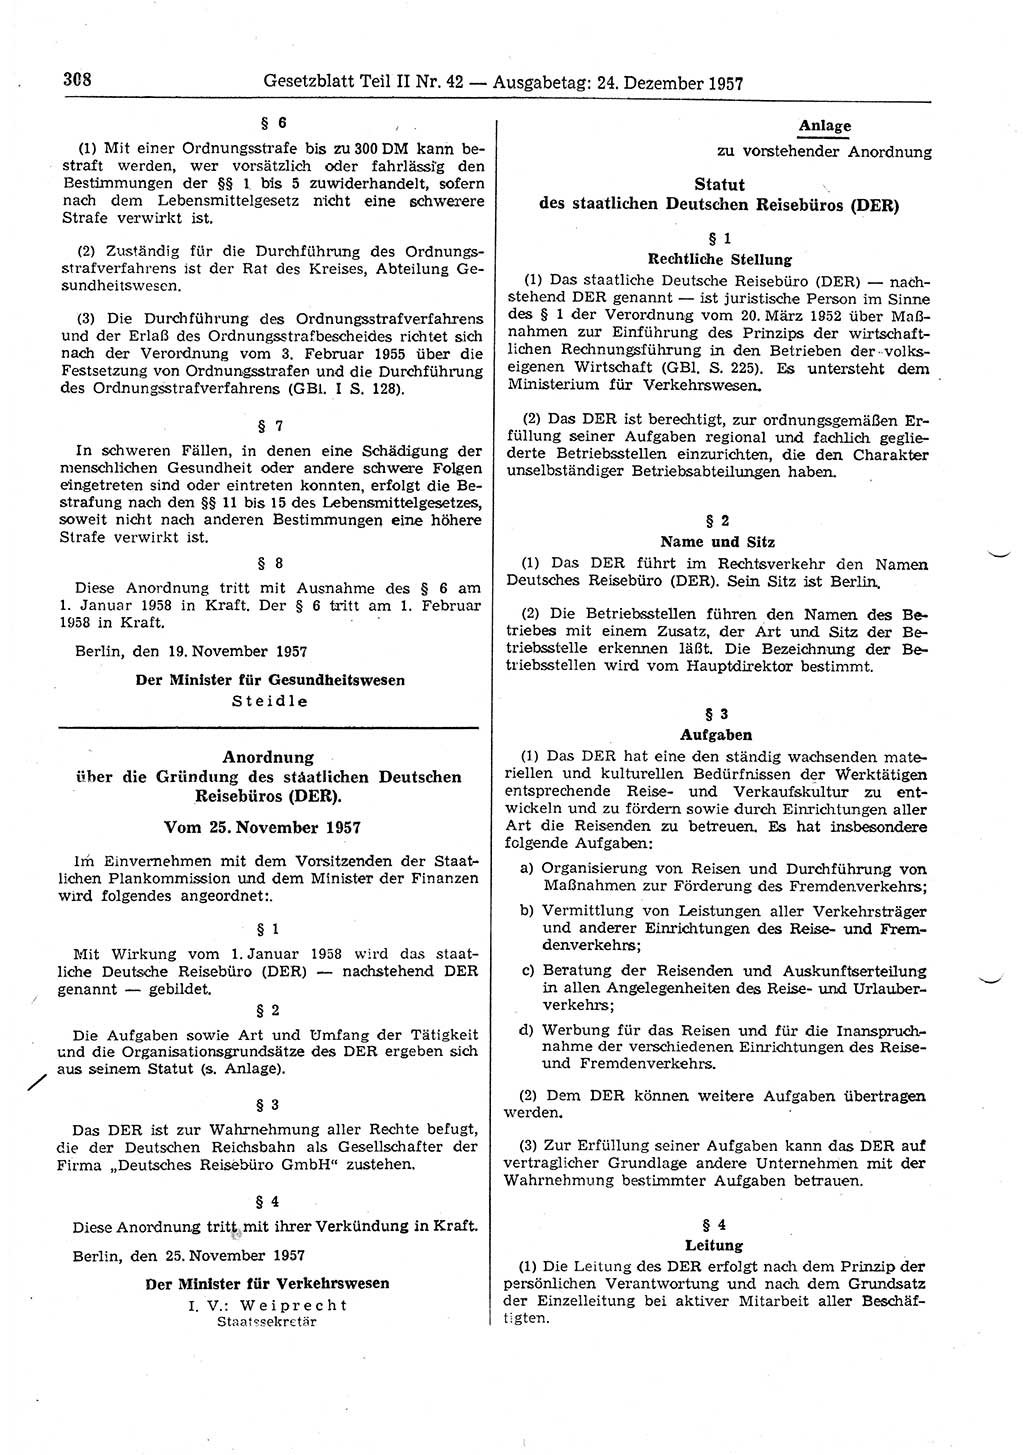 Gesetzblatt (GBl.) der Deutschen Demokratischen Republik (DDR) Teil ⅠⅠ 1957, Seite 308 (GBl. DDR ⅠⅠ 1957, S. 308)